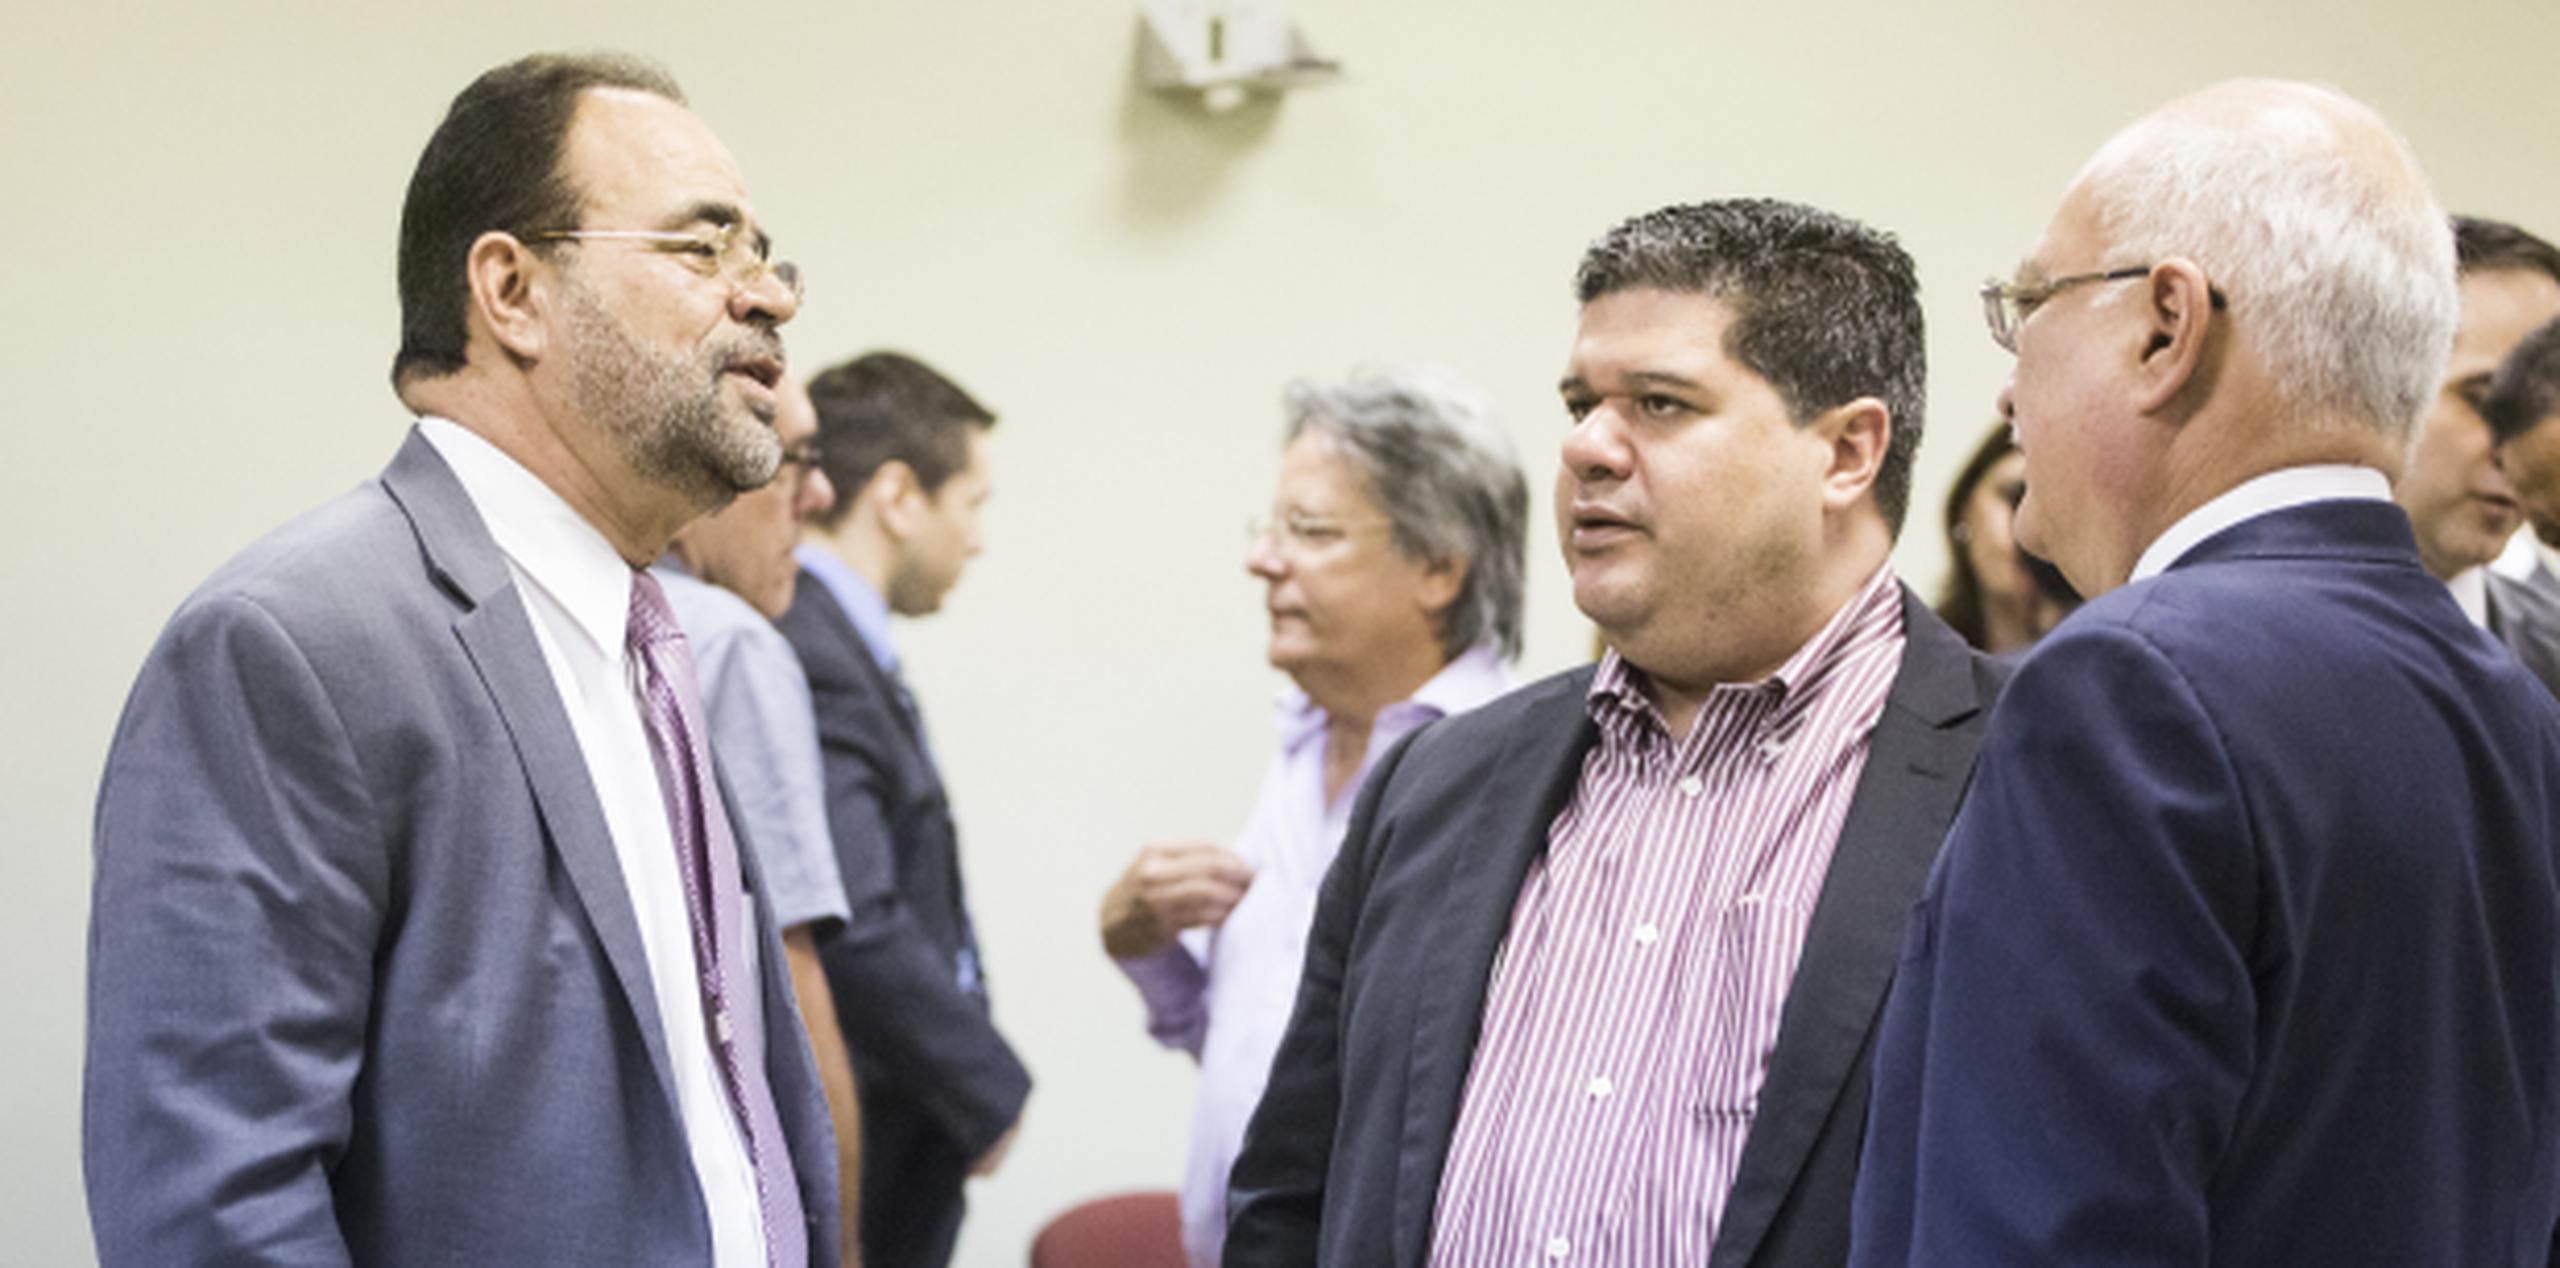 Aníbal Vega Borges, comisionado electoral del PNP, hizo la petición para atender la controversia. (Foto/Erika Rodríguez)